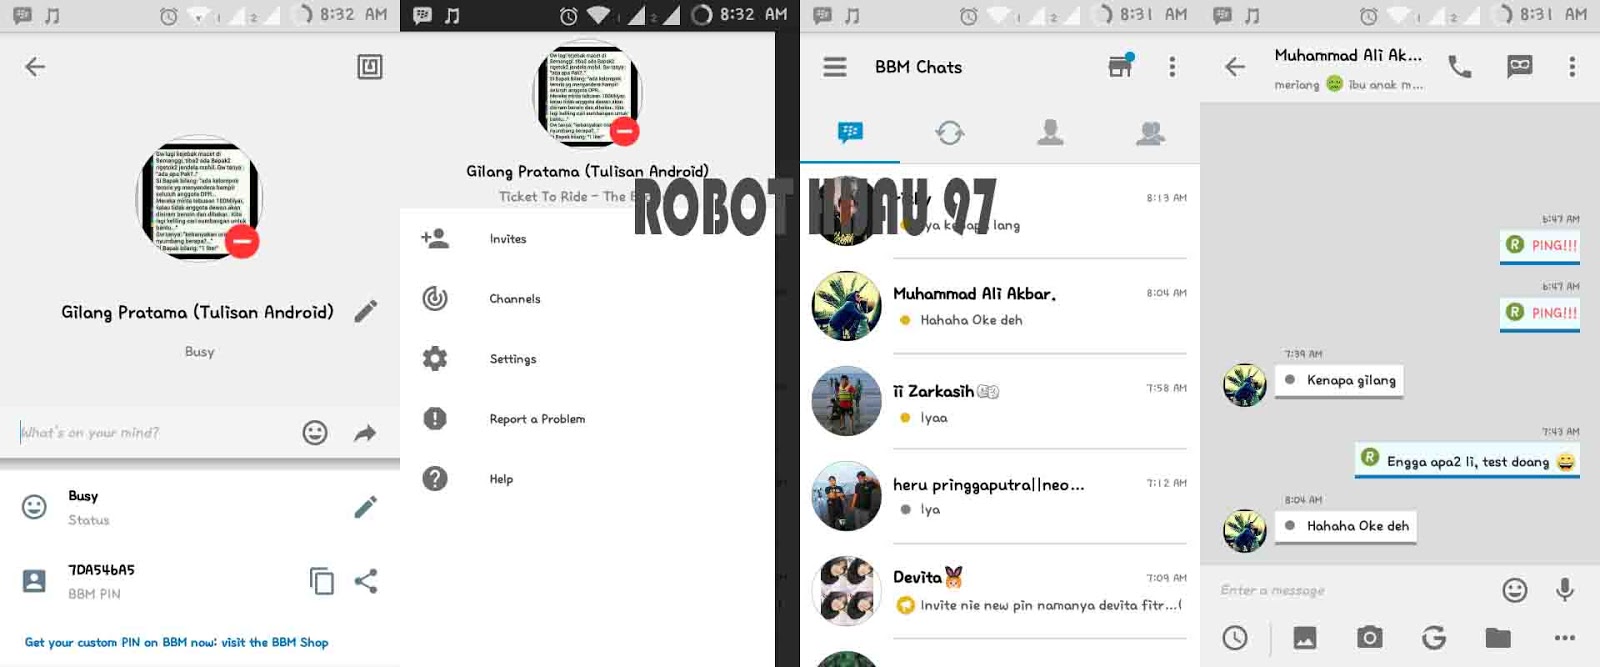 BBM Mod IOS Versi 210035 Robot Hijau 97